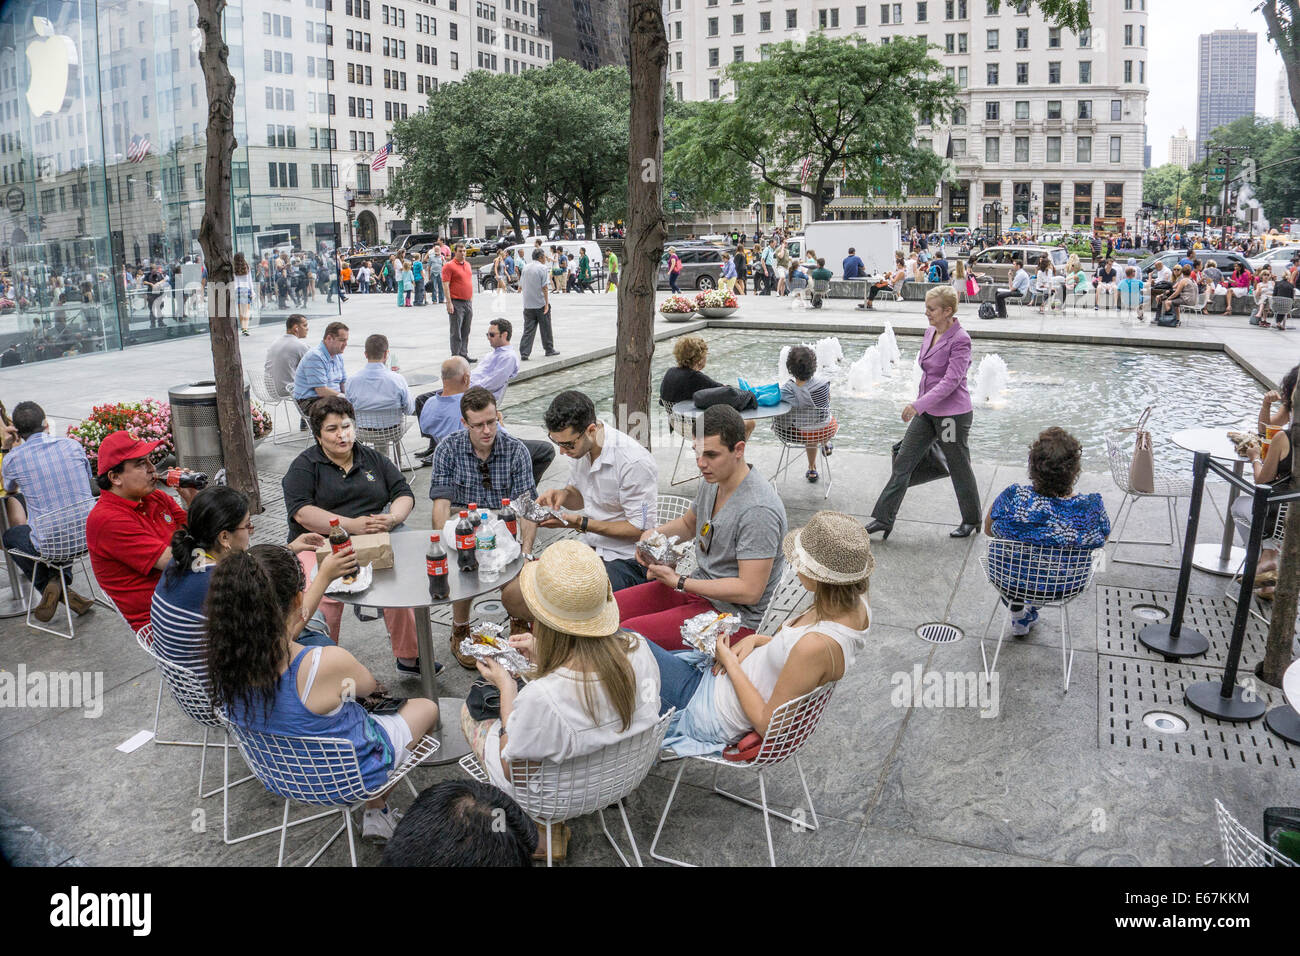 Gruppieren Sie sitzen am runden Tisch Geselligkeit, Essen zum Mitnehmen Mittagessen & trinken Cola auf der Plaza unter Menschen drängen Midtown Manhattan Stockfoto